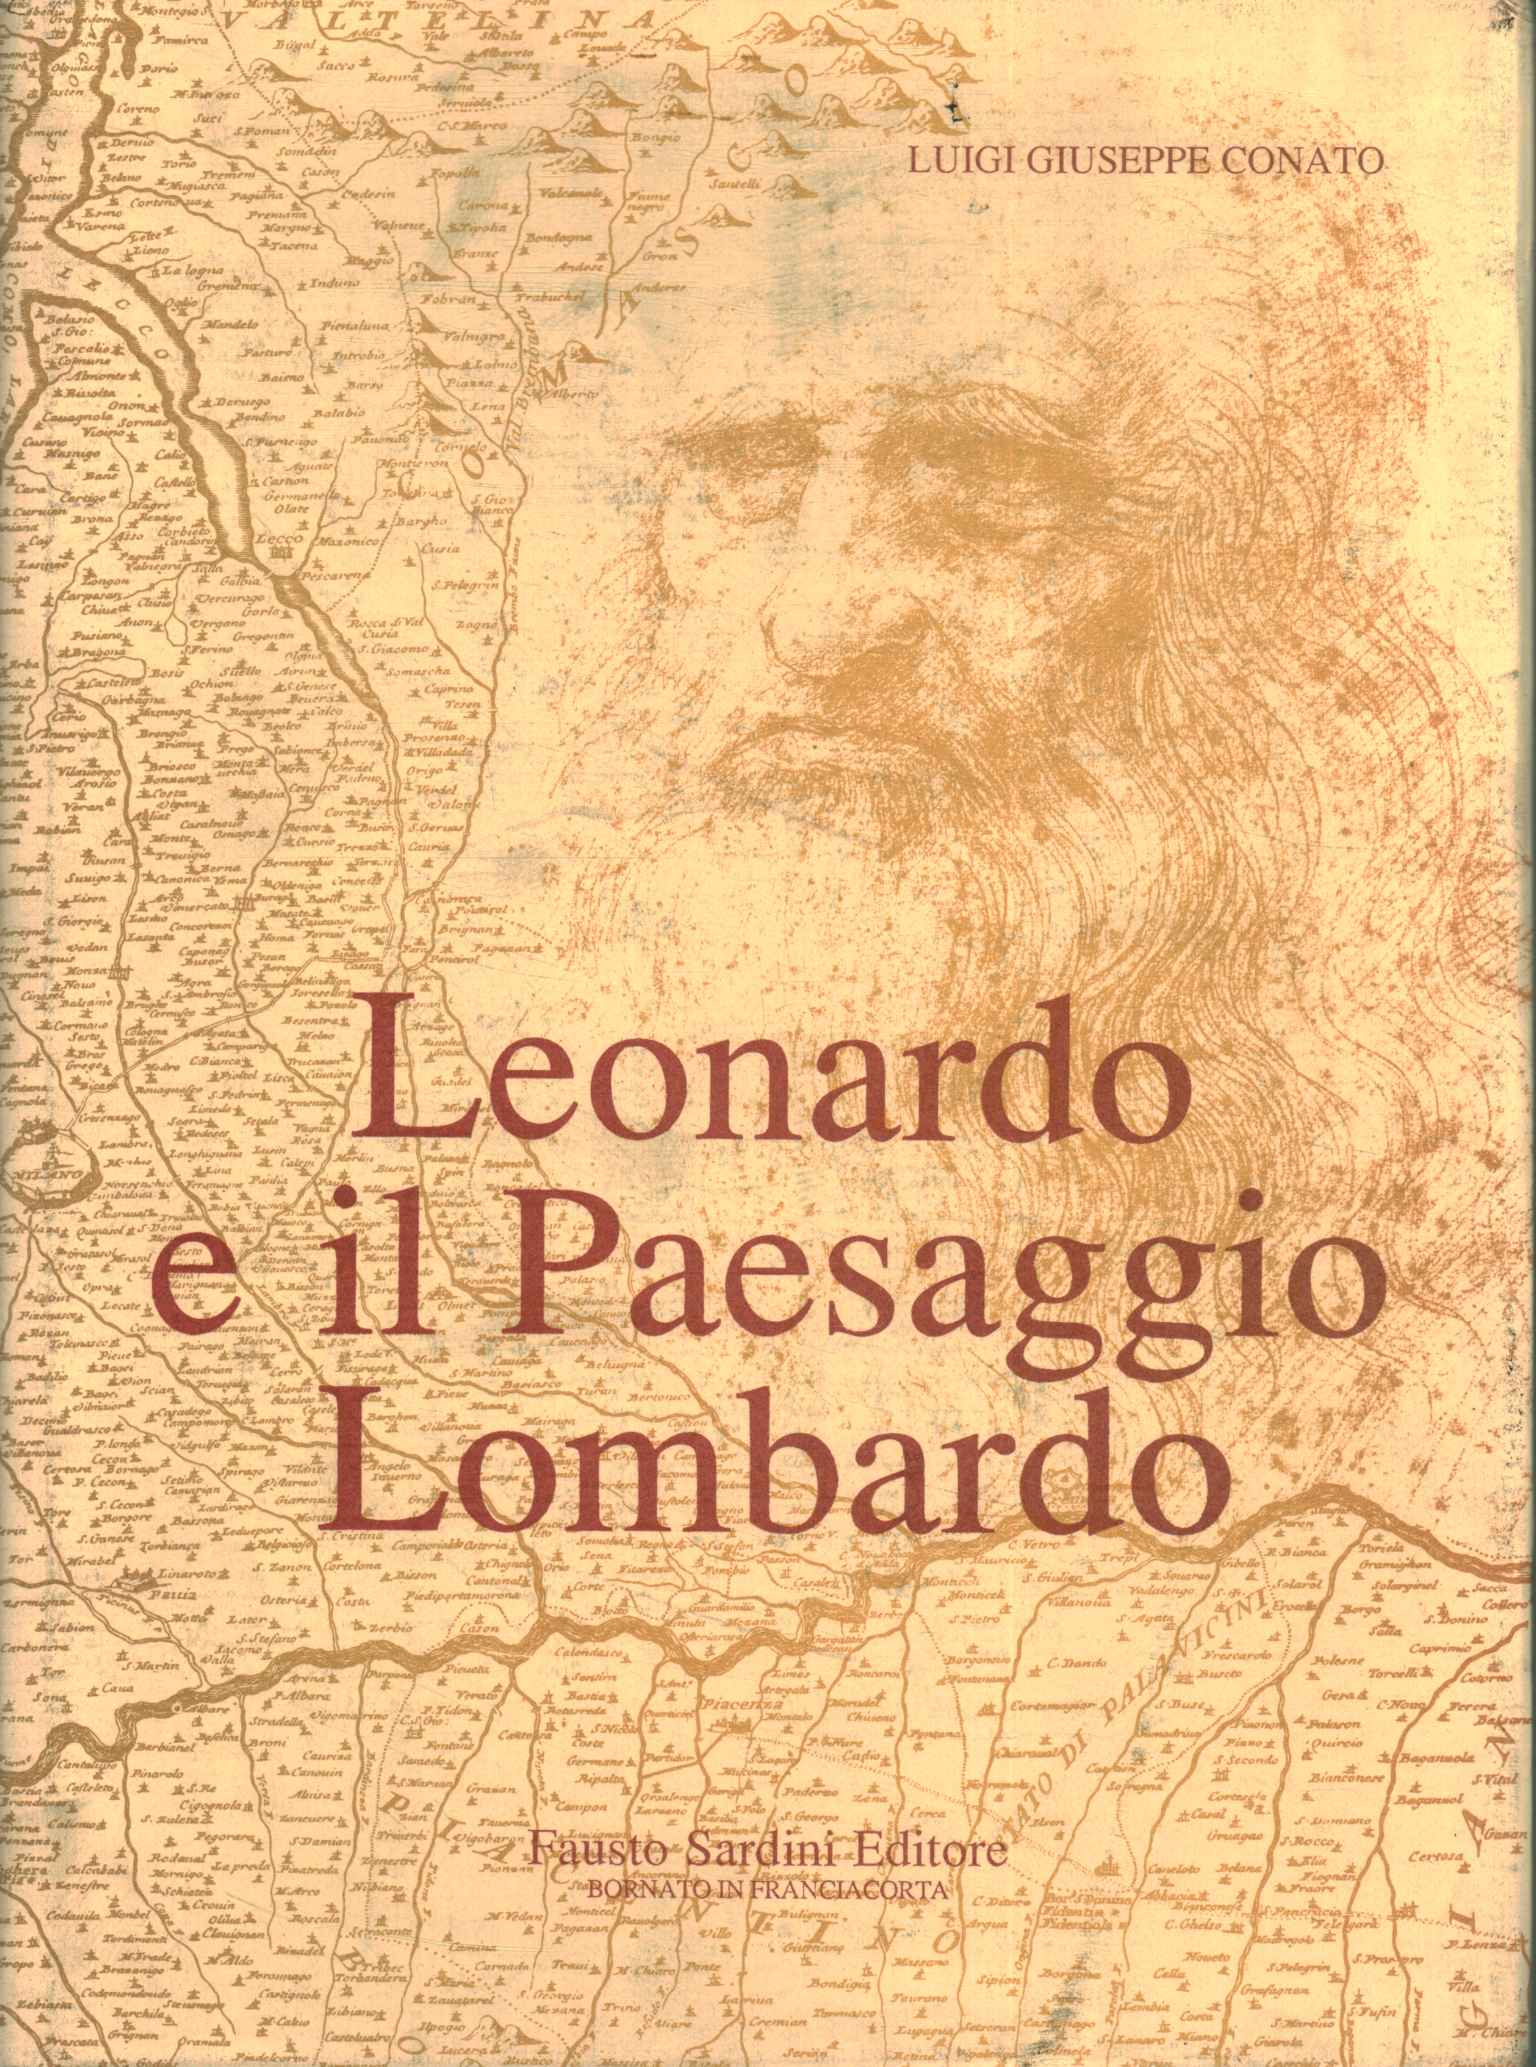 Leonardo und die lombardische Landschaft (Band %2,Leonardo und die lombardische Landschaft (Band %2,Leonardo und die lombardische Landschaft (Band %2,Leonardo und die lombardische Landschaft (Band %2))